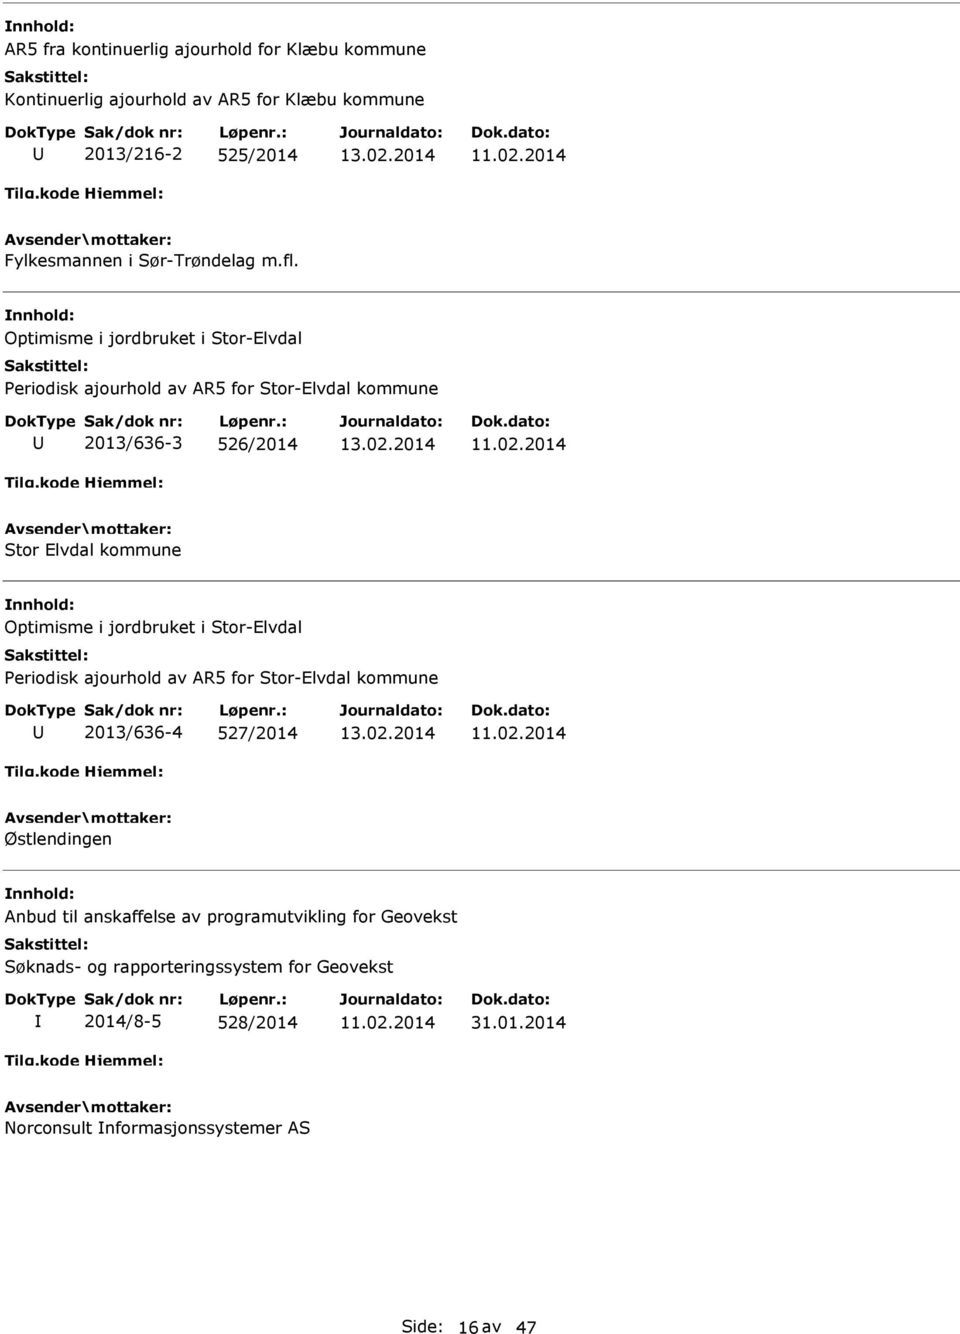 Optimisme i jordbruket i Stor-Elvdal Periodisk ajourhold av R5 for Stor-Elvdal kommune 2013/636-3 526/2014 Stor Elvdal kommune